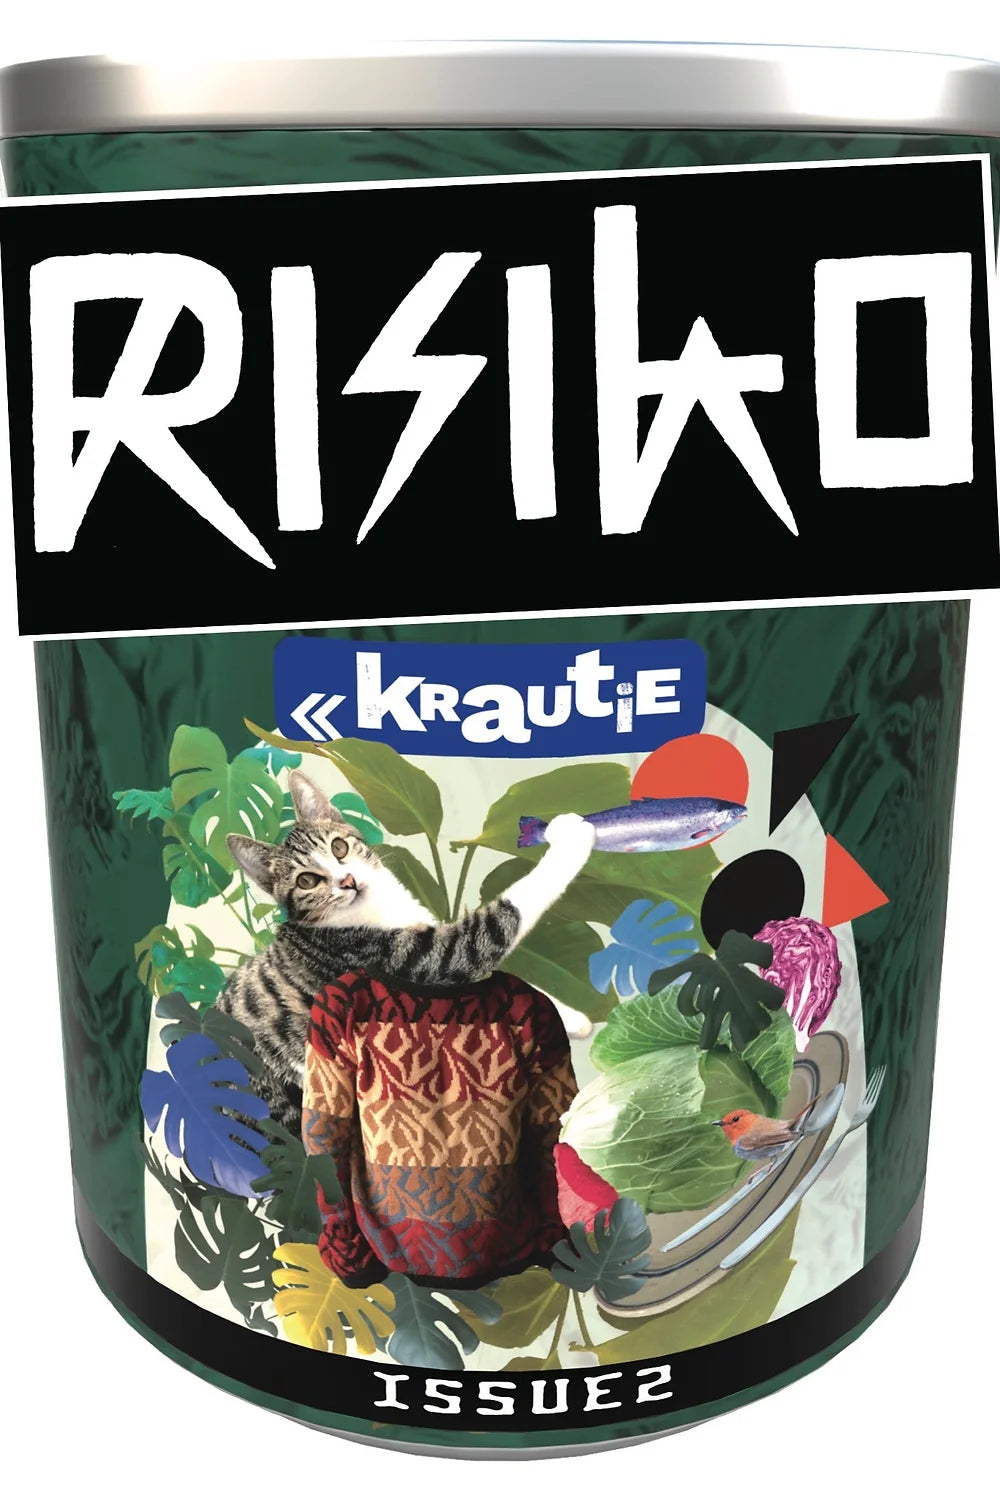 Risiko Magazin - RISIKO No. 2 "Krautie"